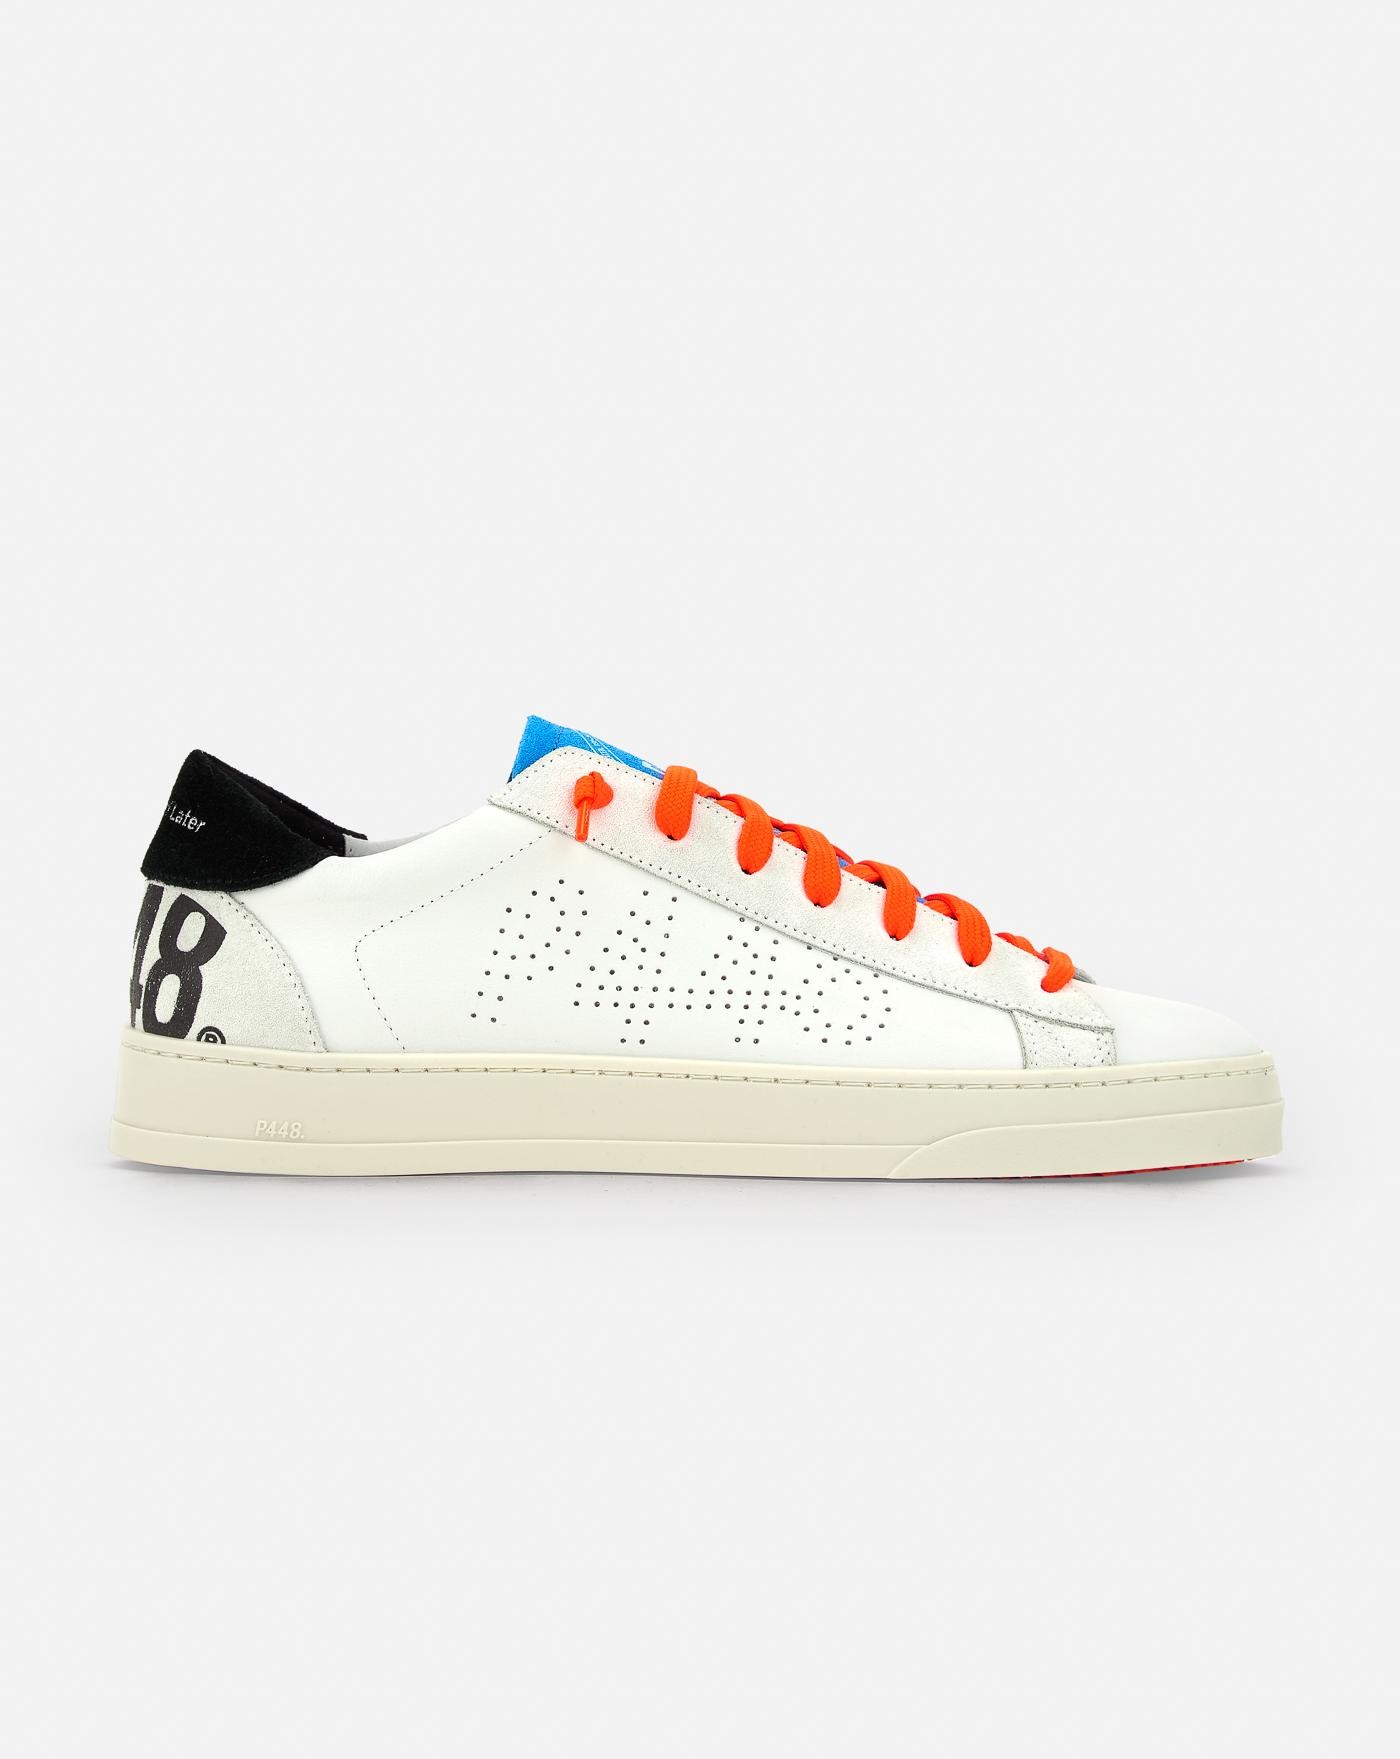 p448-zapatillas-jack-whi-neo-sneakers-white-orange-blancas